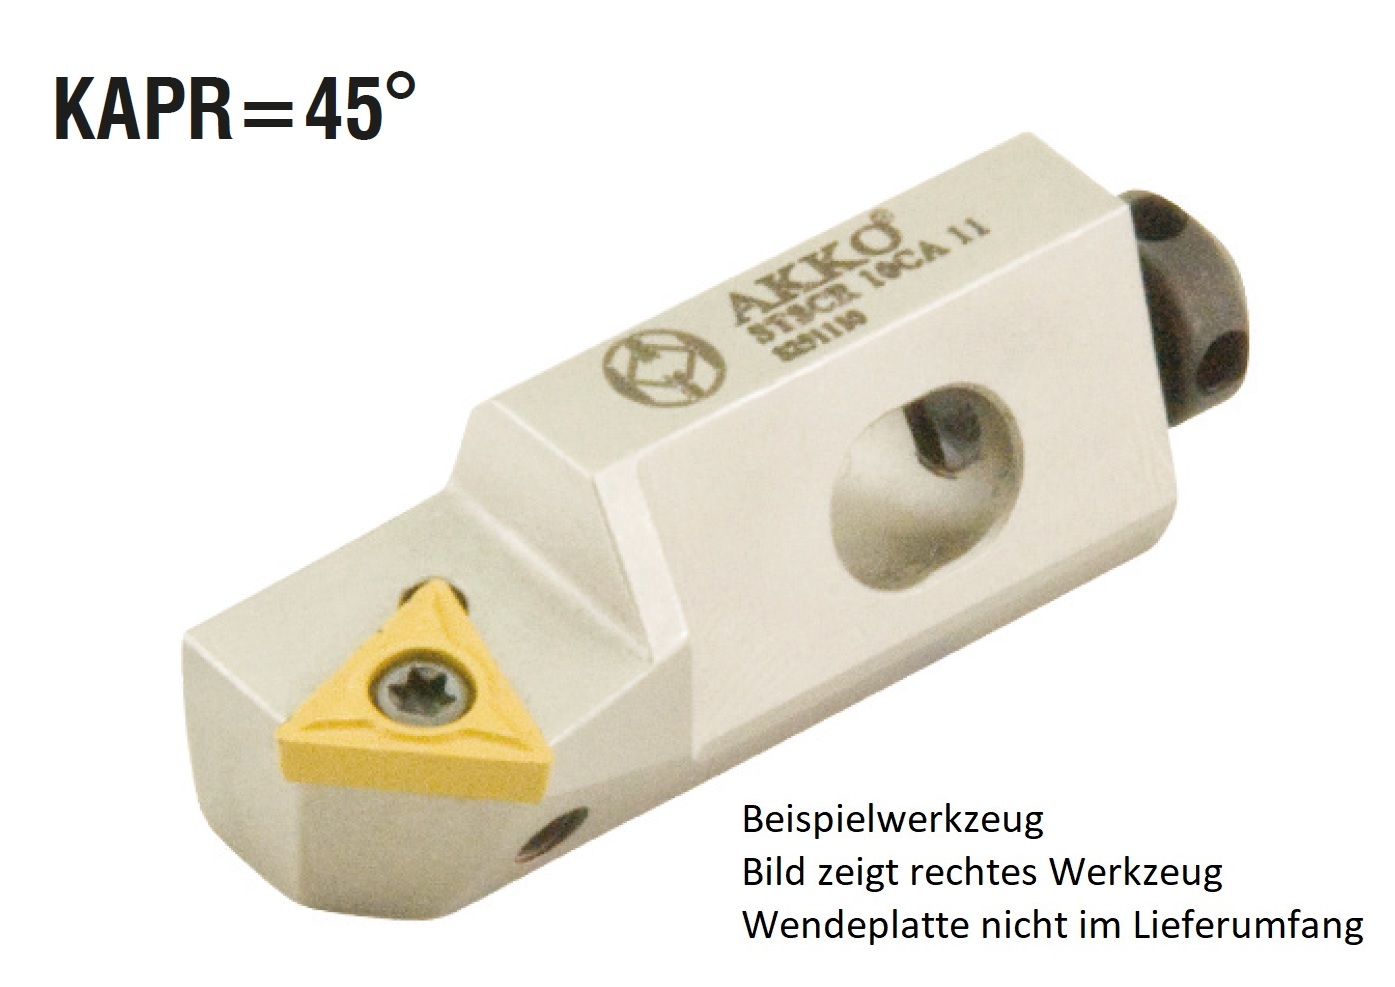 AKKO-Kurzdrehhalter für ISO-WSP TC.T 110204
rechts, 45° Anstellwinkel